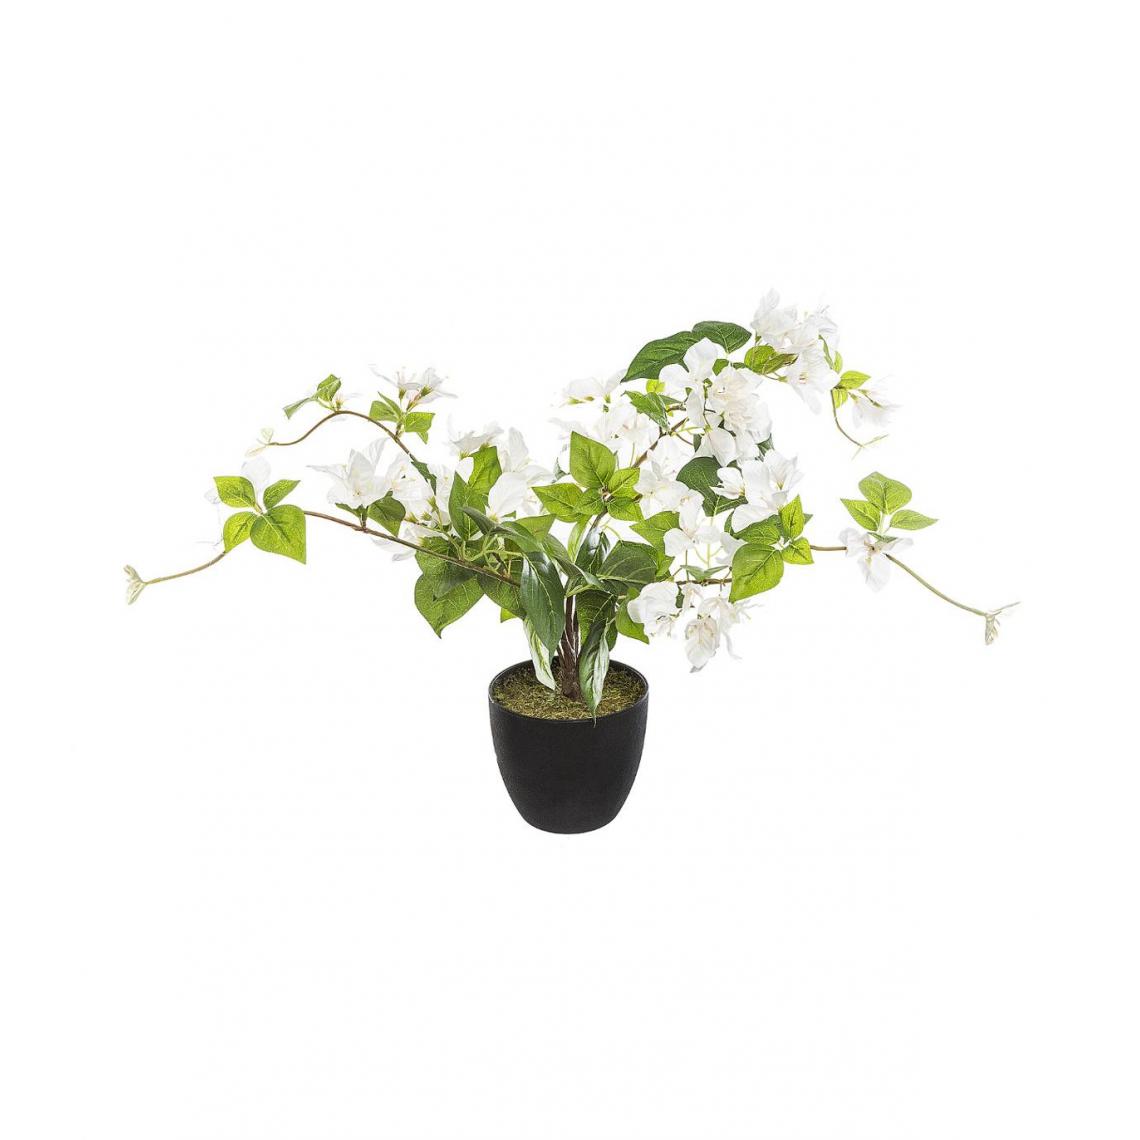 Atmosphera, Createur D'Interieur - Atmosphera - Plante artificielle Bougainvilliers dans son pot H 76 cm - Plantes et fleurs artificielles